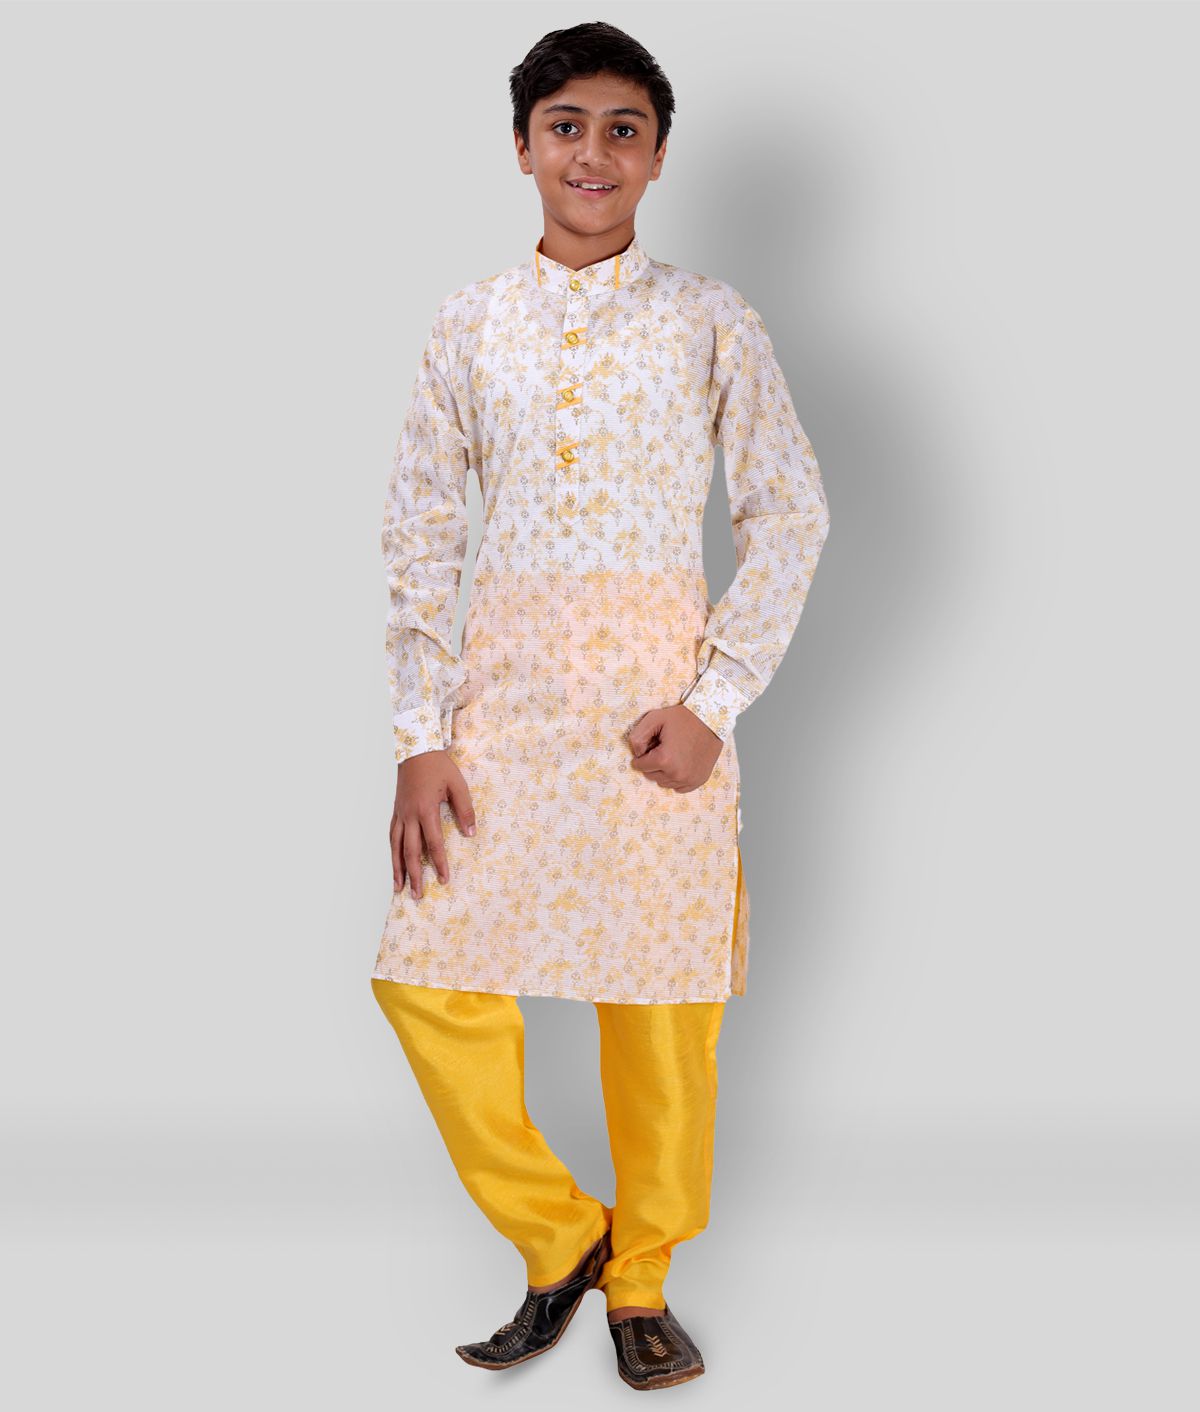     			Fourfolds Ethnic Wear Printed Kurta Pyjama Set For Kids & Boys_FE737